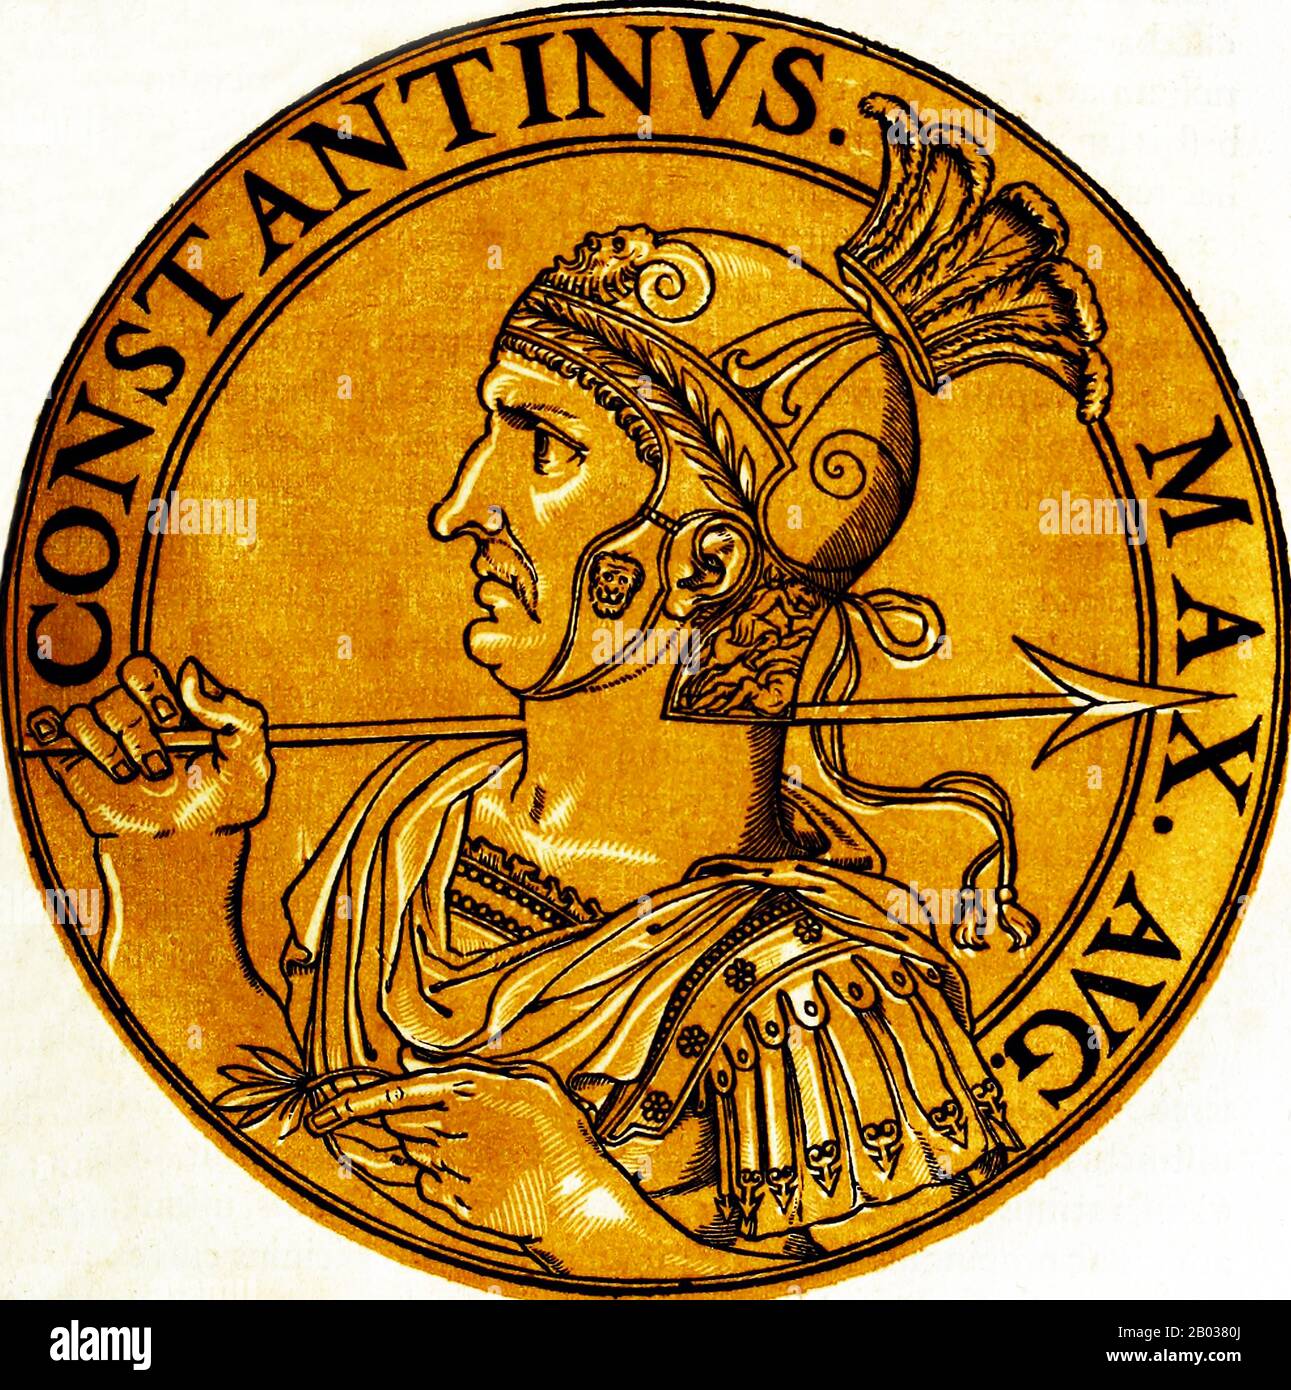 Konstantin I. (272-337), auch Konstantin der Große und der heilige Konstantin genannt, war der Sohn des Kaiser Constantius. Sein Vater schickte ihn nach Osten, um unter den Kaisern Diokletian und Galerius zu dienen und verbrachte einige Zeit am Hof des letzteren. Nachdem sein Vater 306 CE gestorben war, wurde Konstantin von seiner Armee in Eboracum (York) zu seinem Nachfolger und Kaiser ausgerufen. Er blieb zunächst in den Bemühungen Kaiser Galerius, den Usurpator Maxentius zu besiegen, offiziell neutral, doch nach Galerius Tod wurde Konstantin in den Konflikt hineingezogen. Schließlich besiegte er Maxentius im Jahr 312 CE und kämpfte dann gegen ag Stockfoto